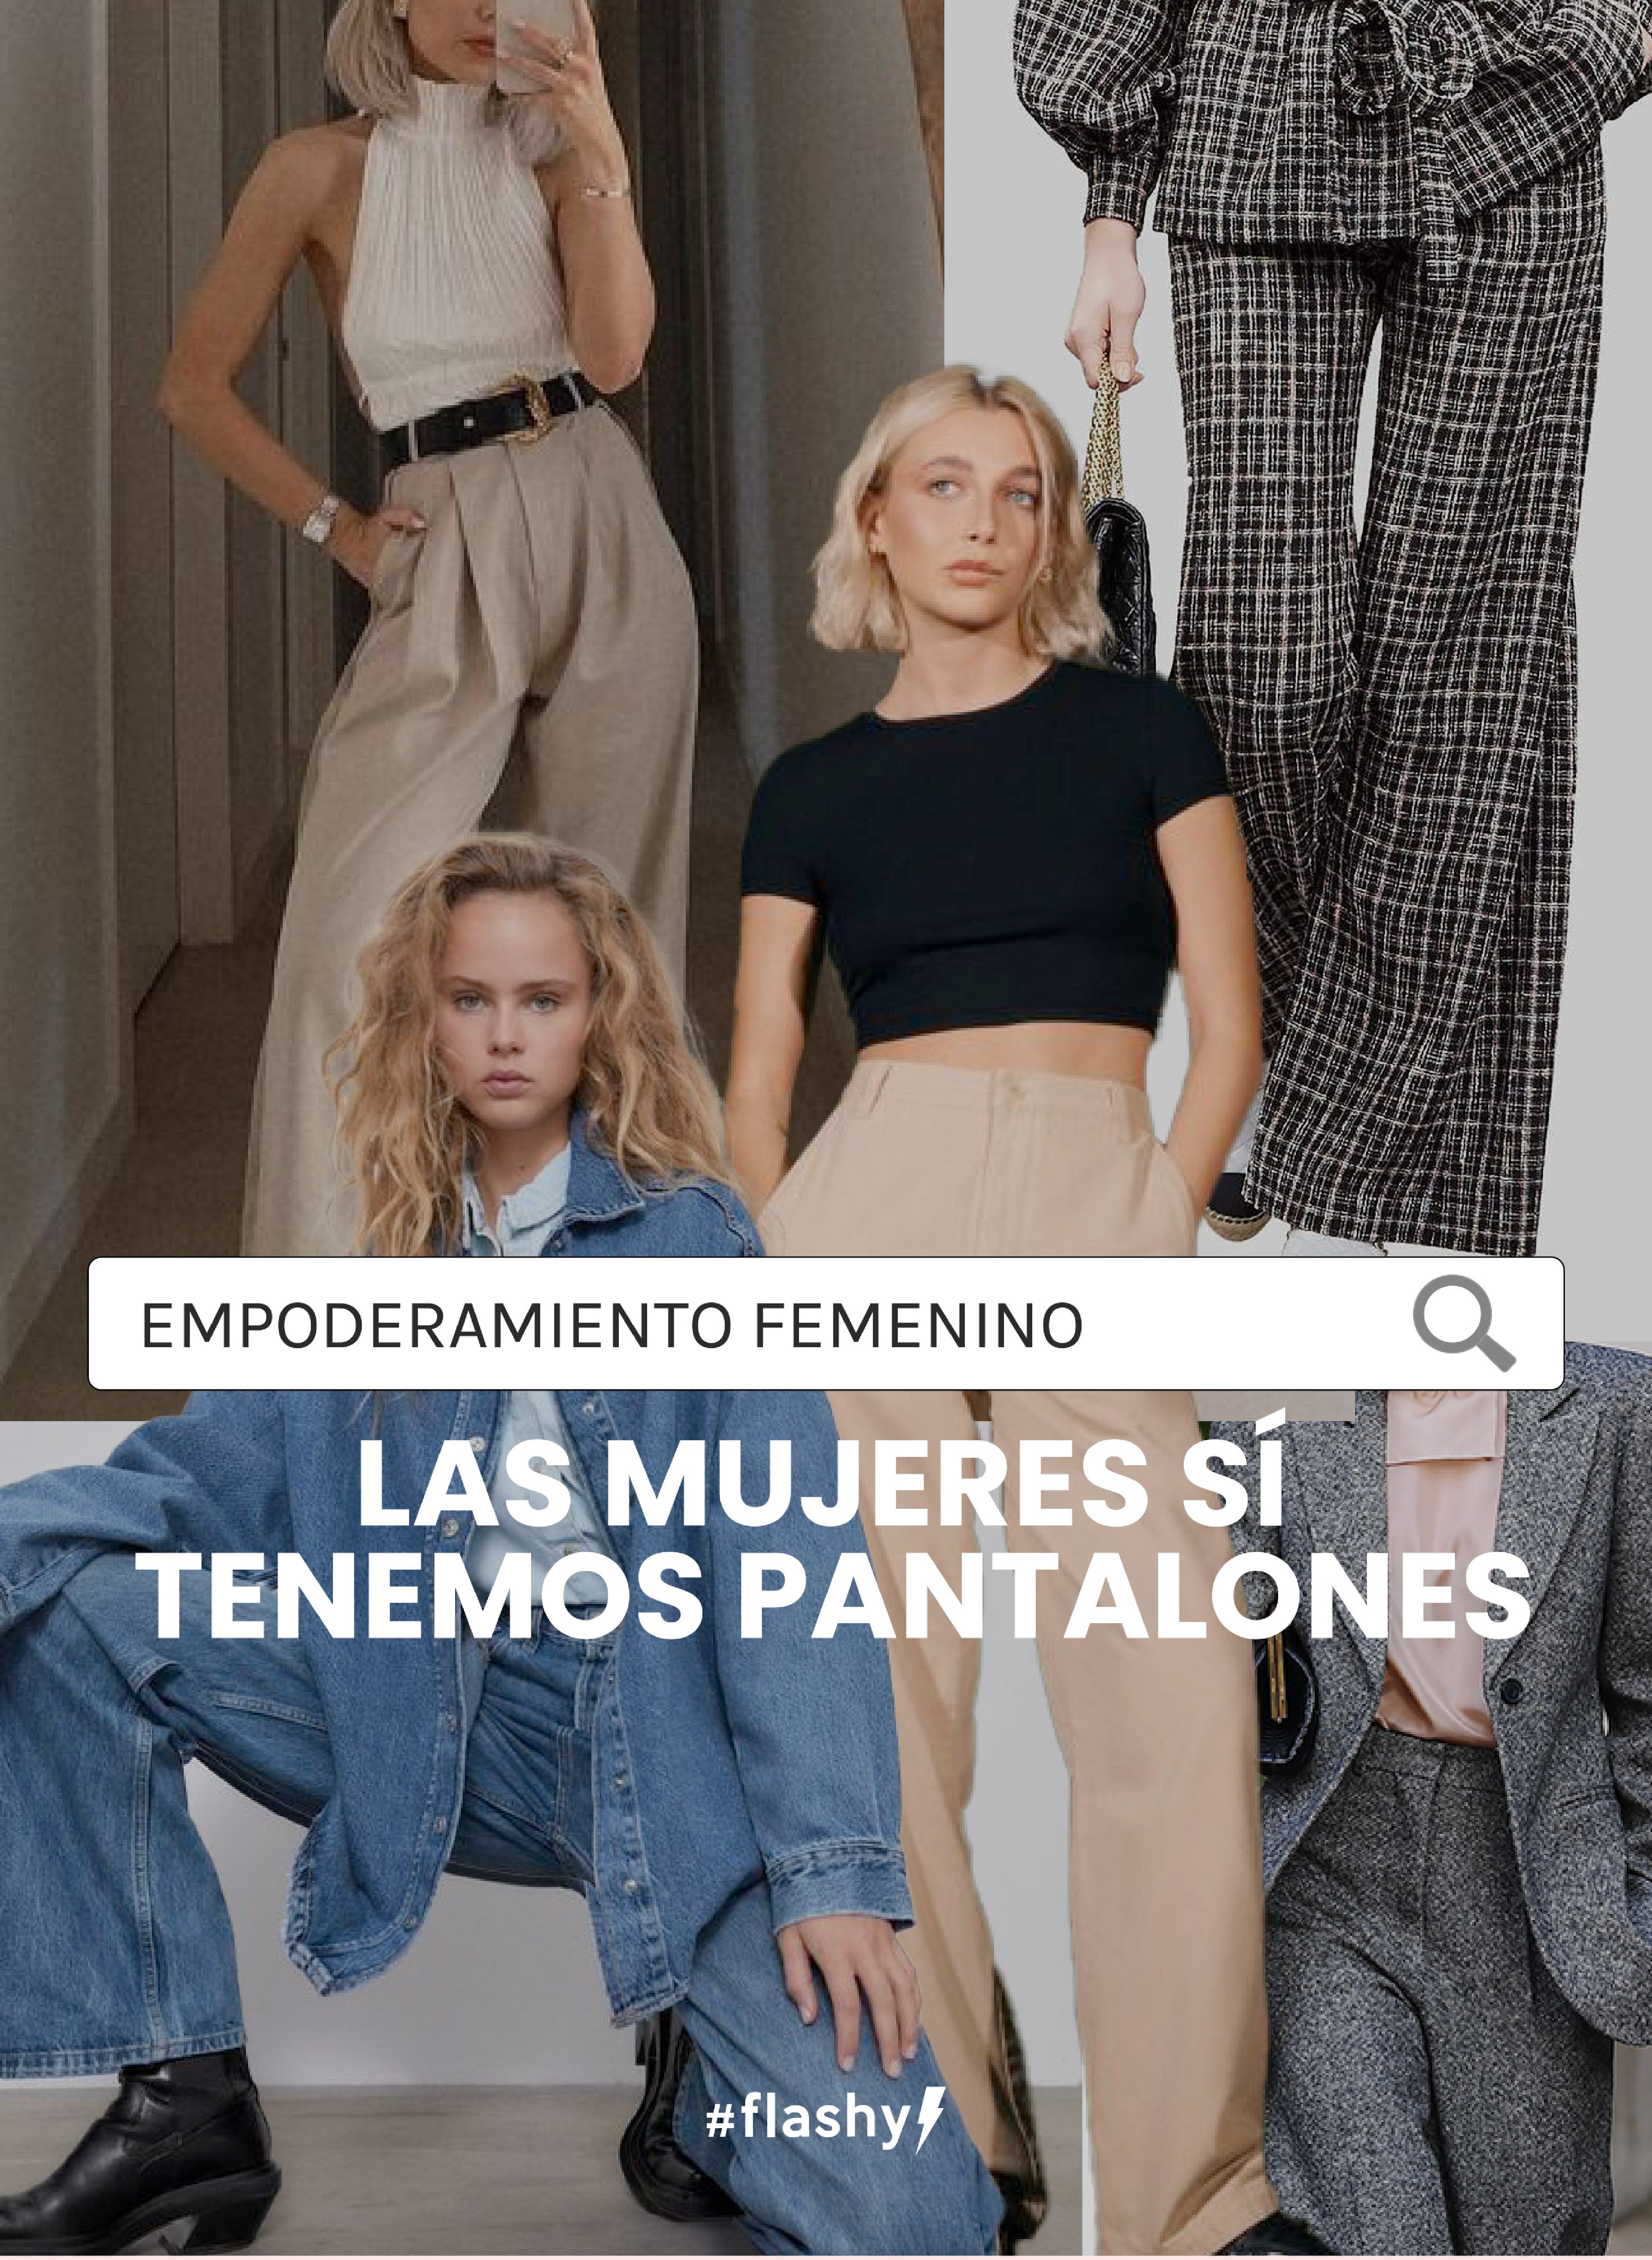 Empoderamiento femenino: las mujeres sí tenemos pantalones